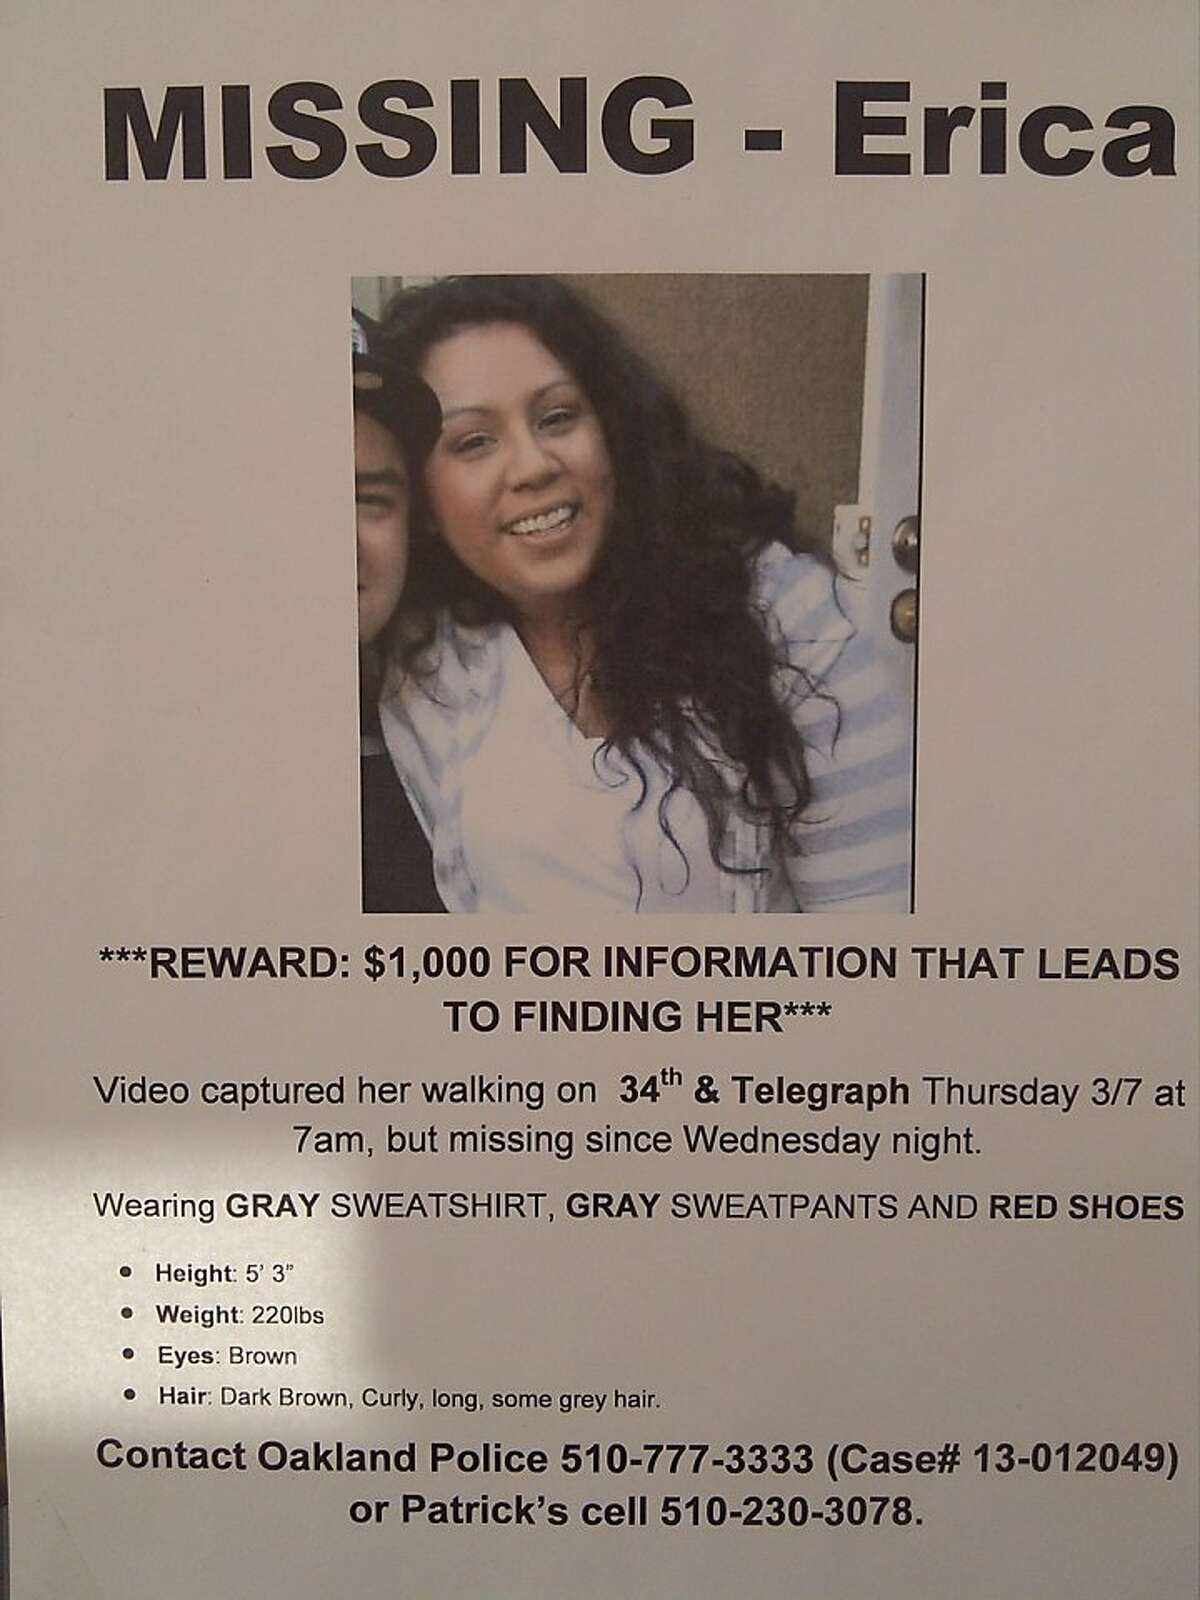 Flier regarding a missing Oakland woman, Erica Maskaleris, who has not been seen since March 7, 2013.